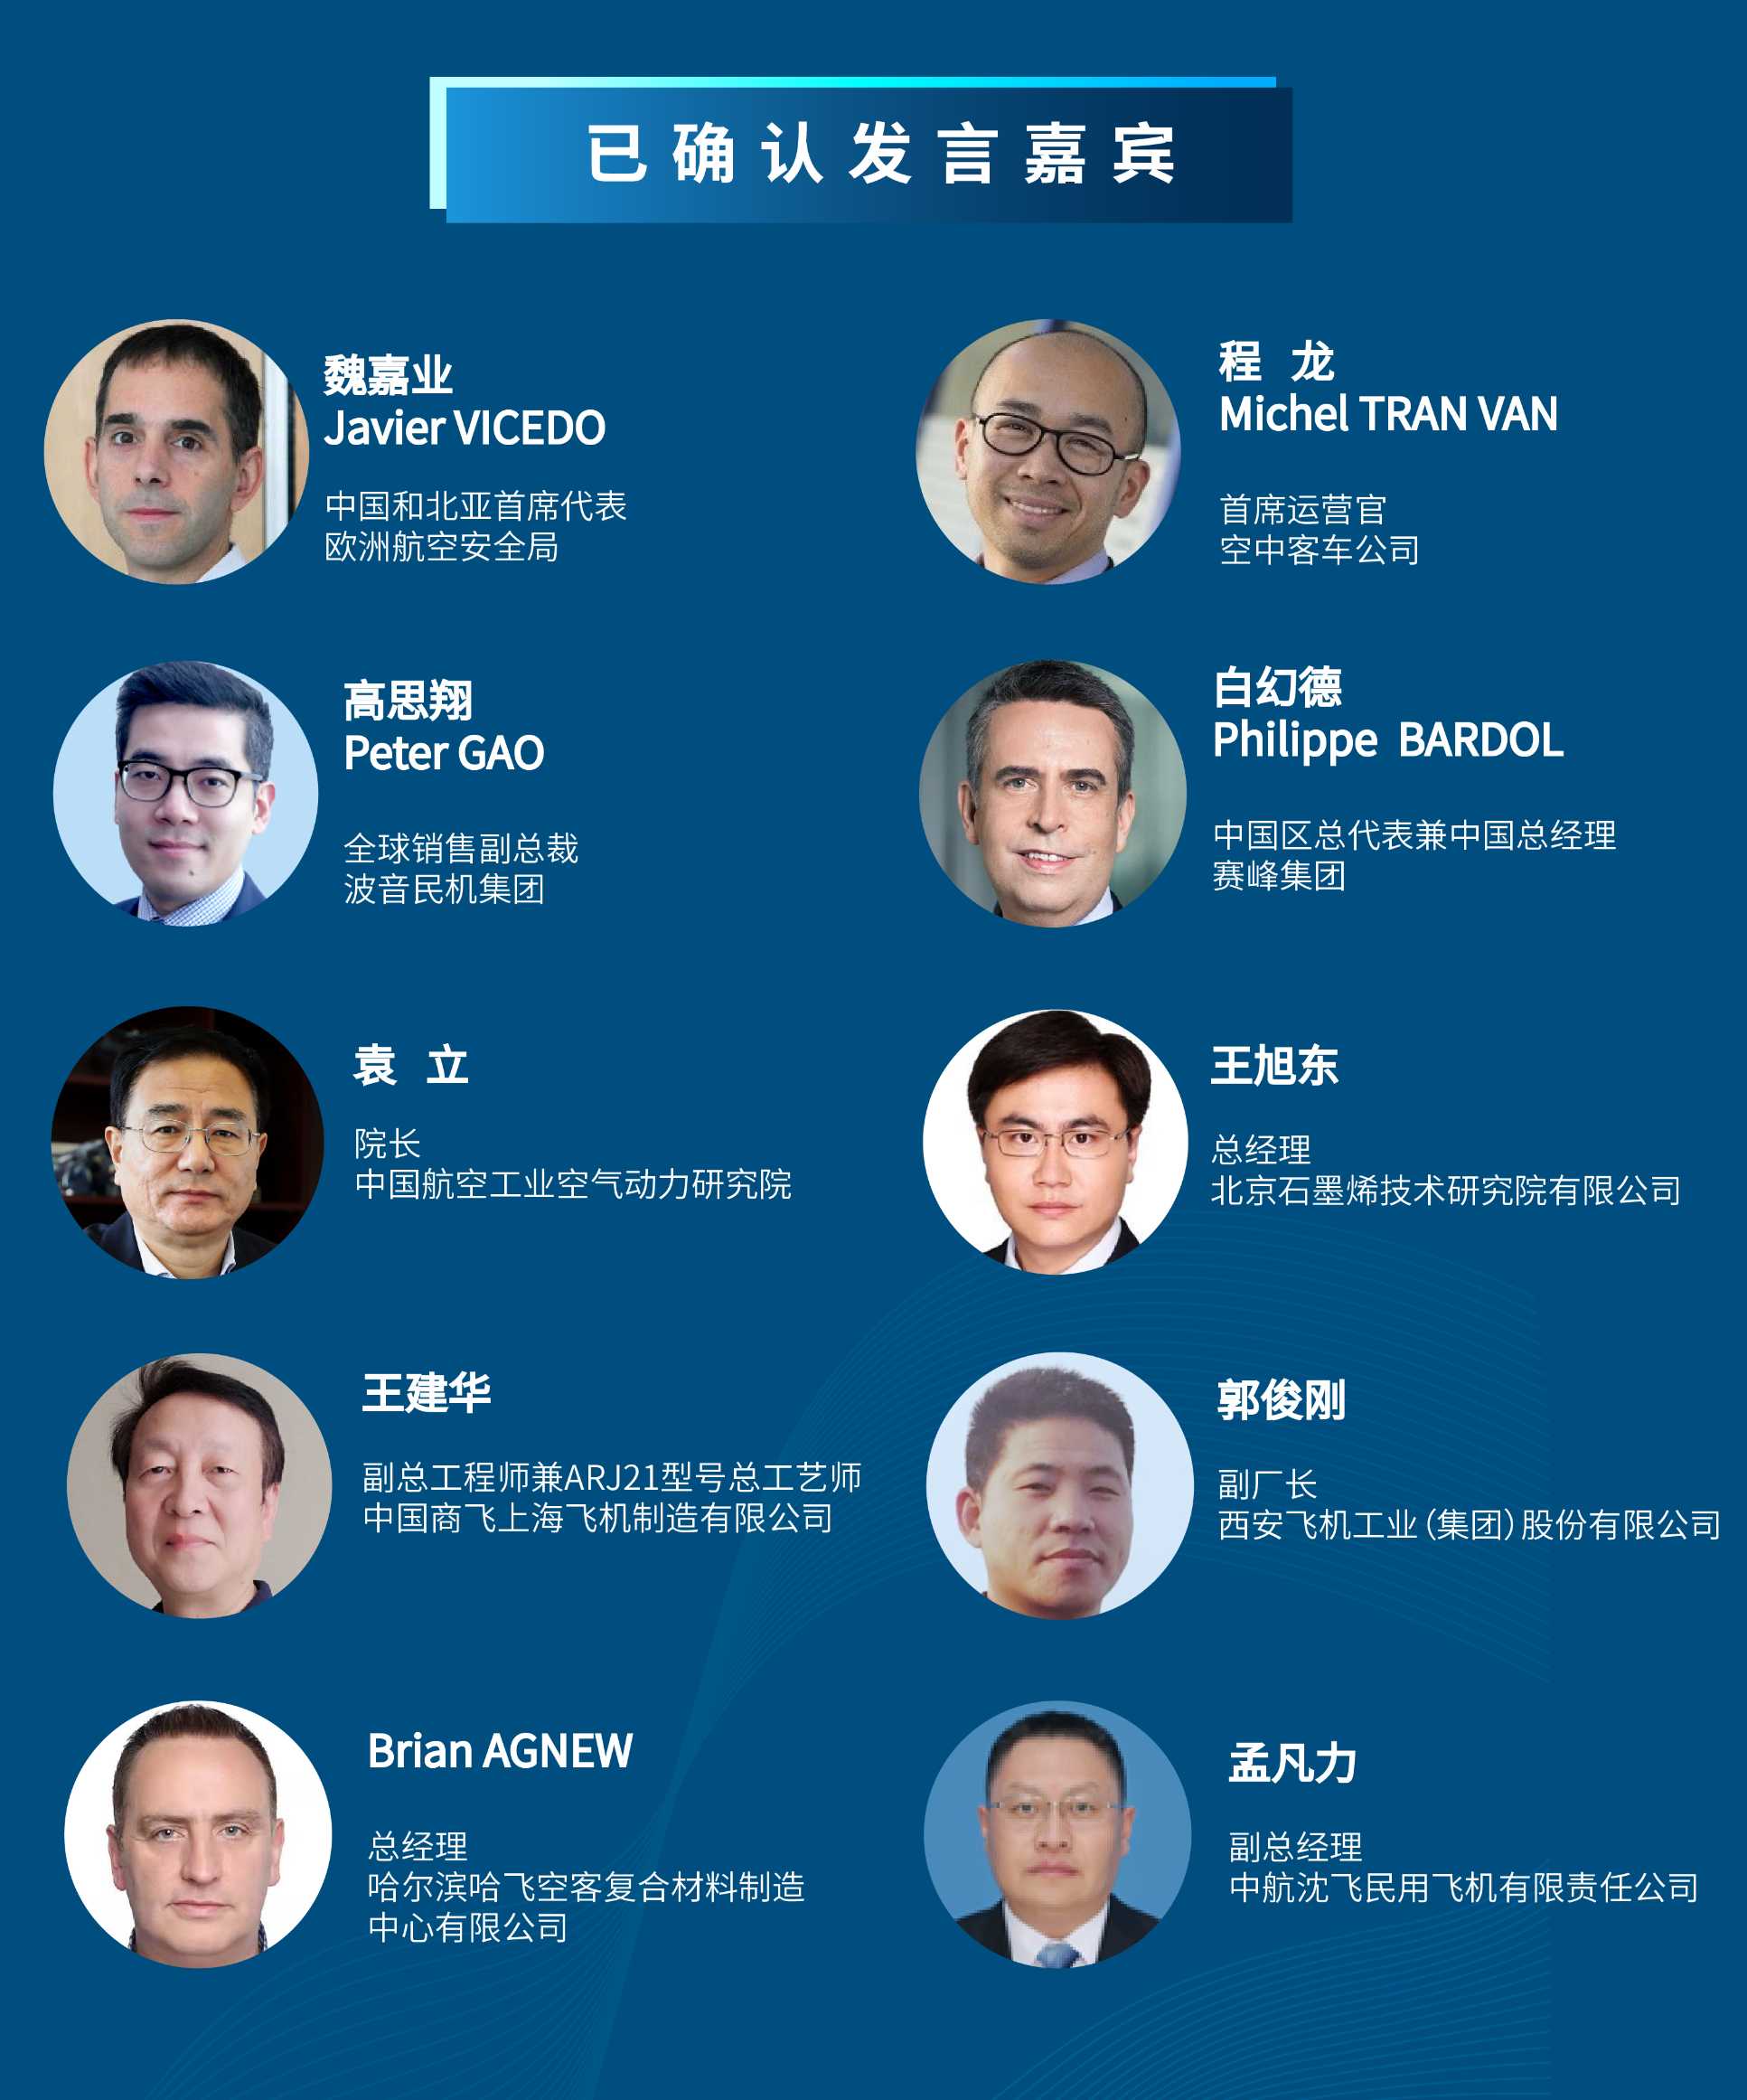 2022中国航空工业国际论坛